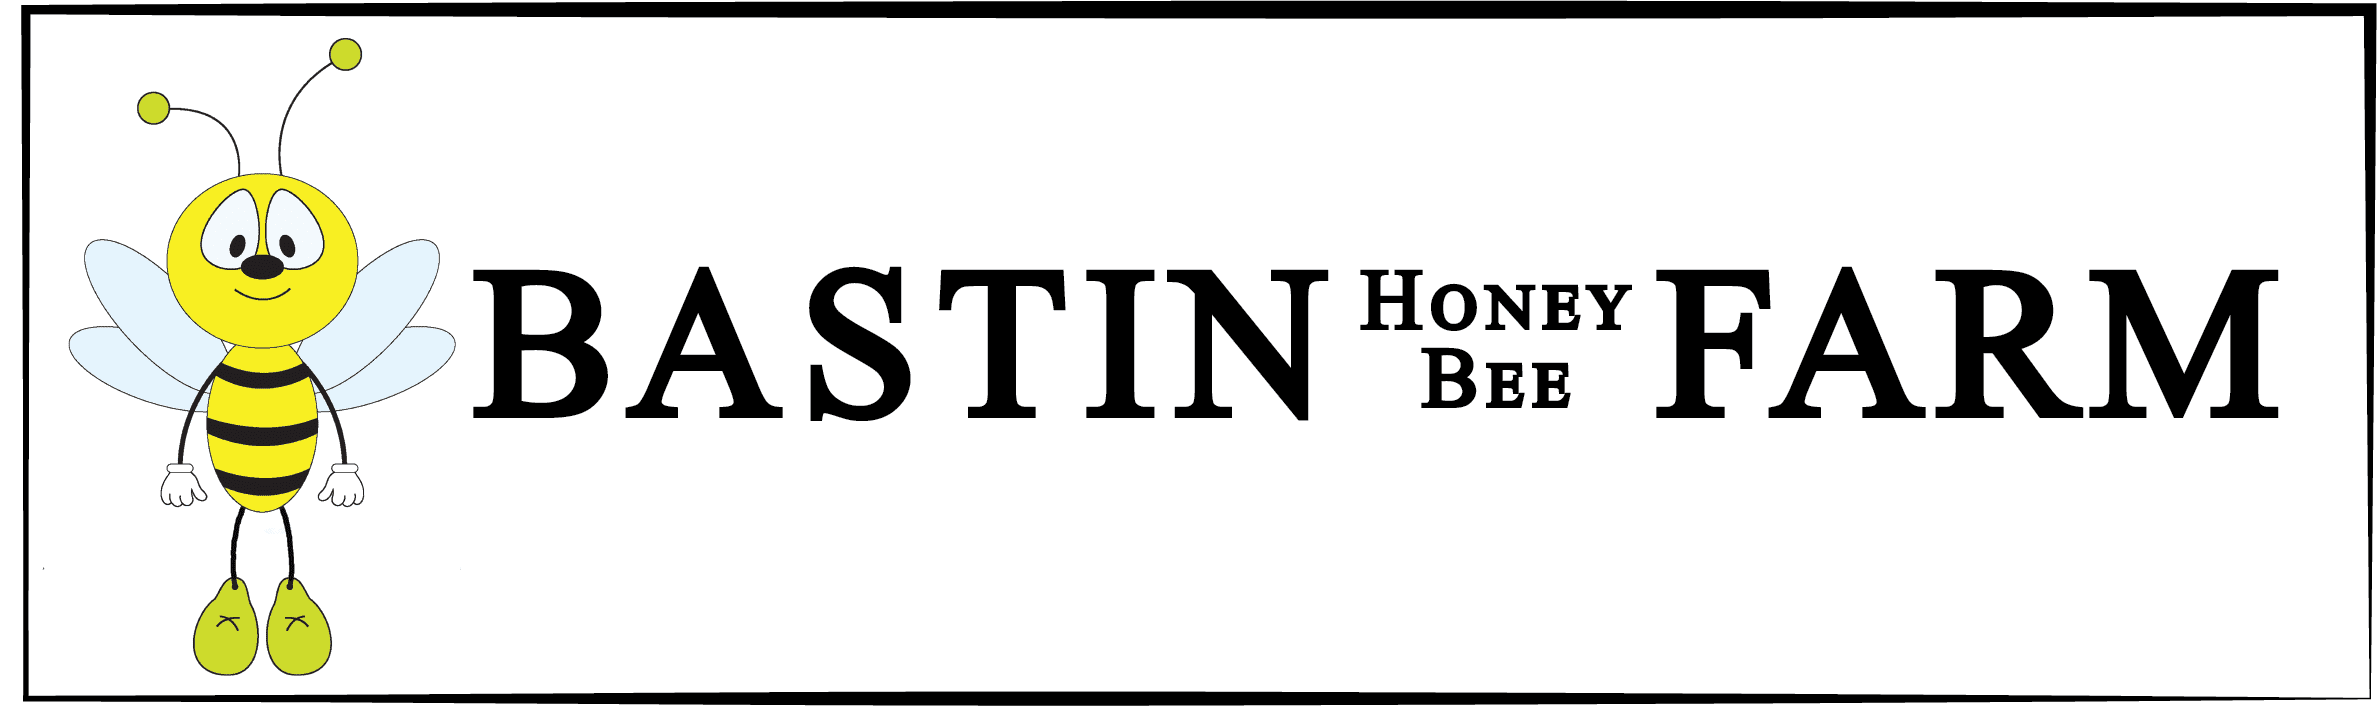 Bastin Honey Bee Farm